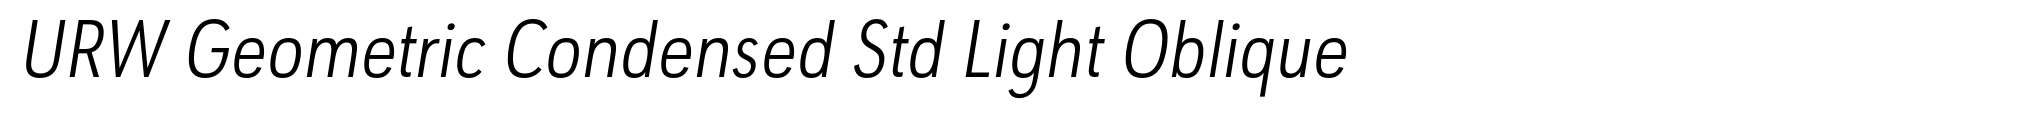 URW Geometric Condensed Std Light Oblique image